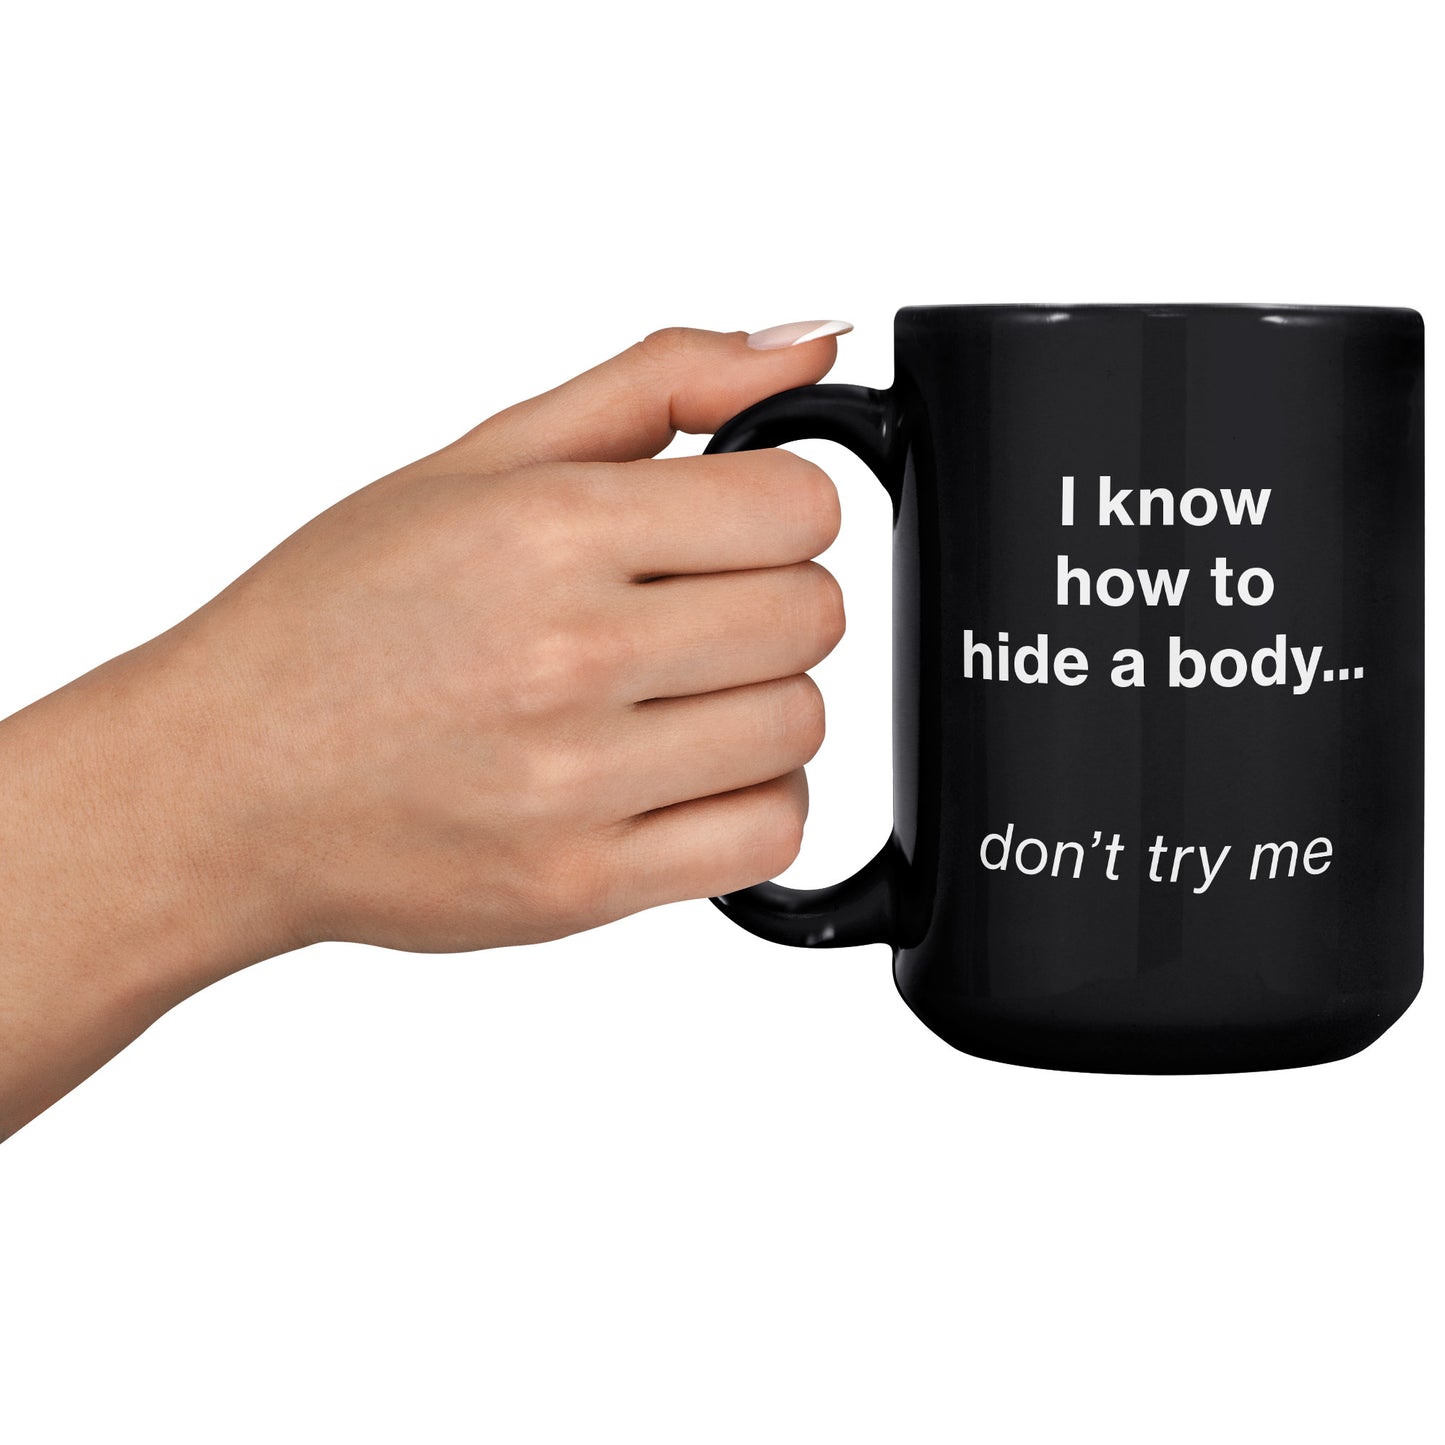 Hide a Body mug - black